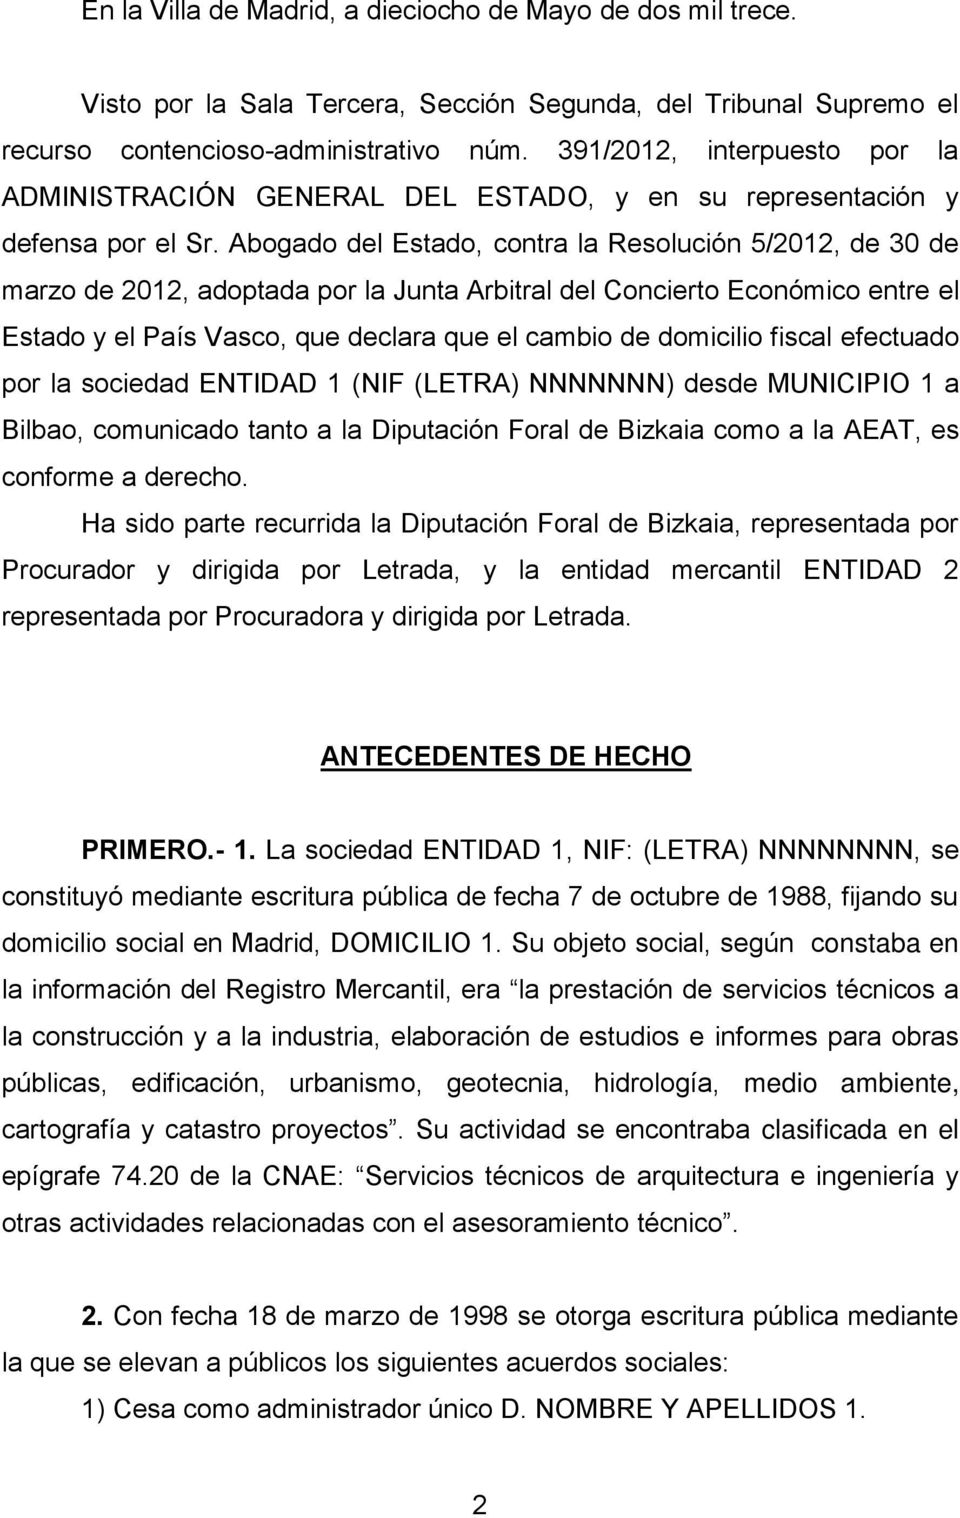 Abogado del Estado, contra la Resolución 5/2012, de 30 de marzo de 2012, adoptada por la Junta Arbitral del Concierto Económico entre el Estado y el País Vasco, que declara que el cambio de domicilio